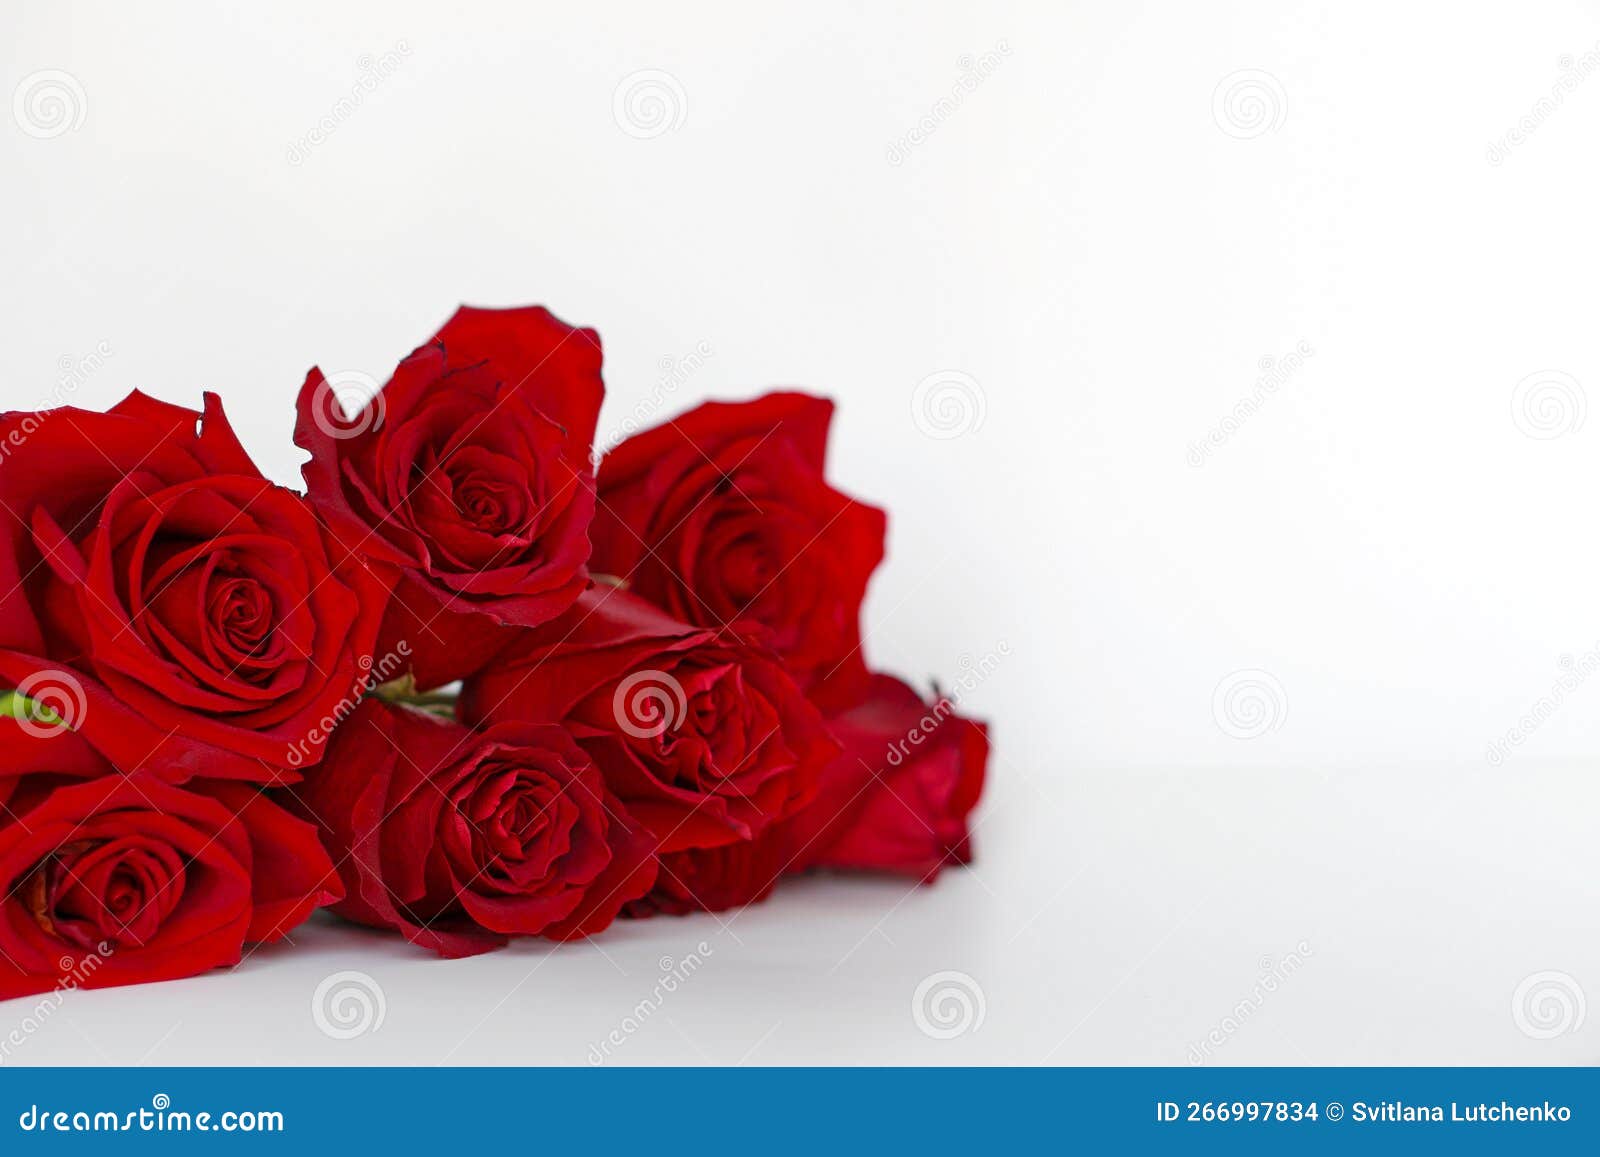 Romance de san valentín. hombre joven con ramo de rosas rojas y